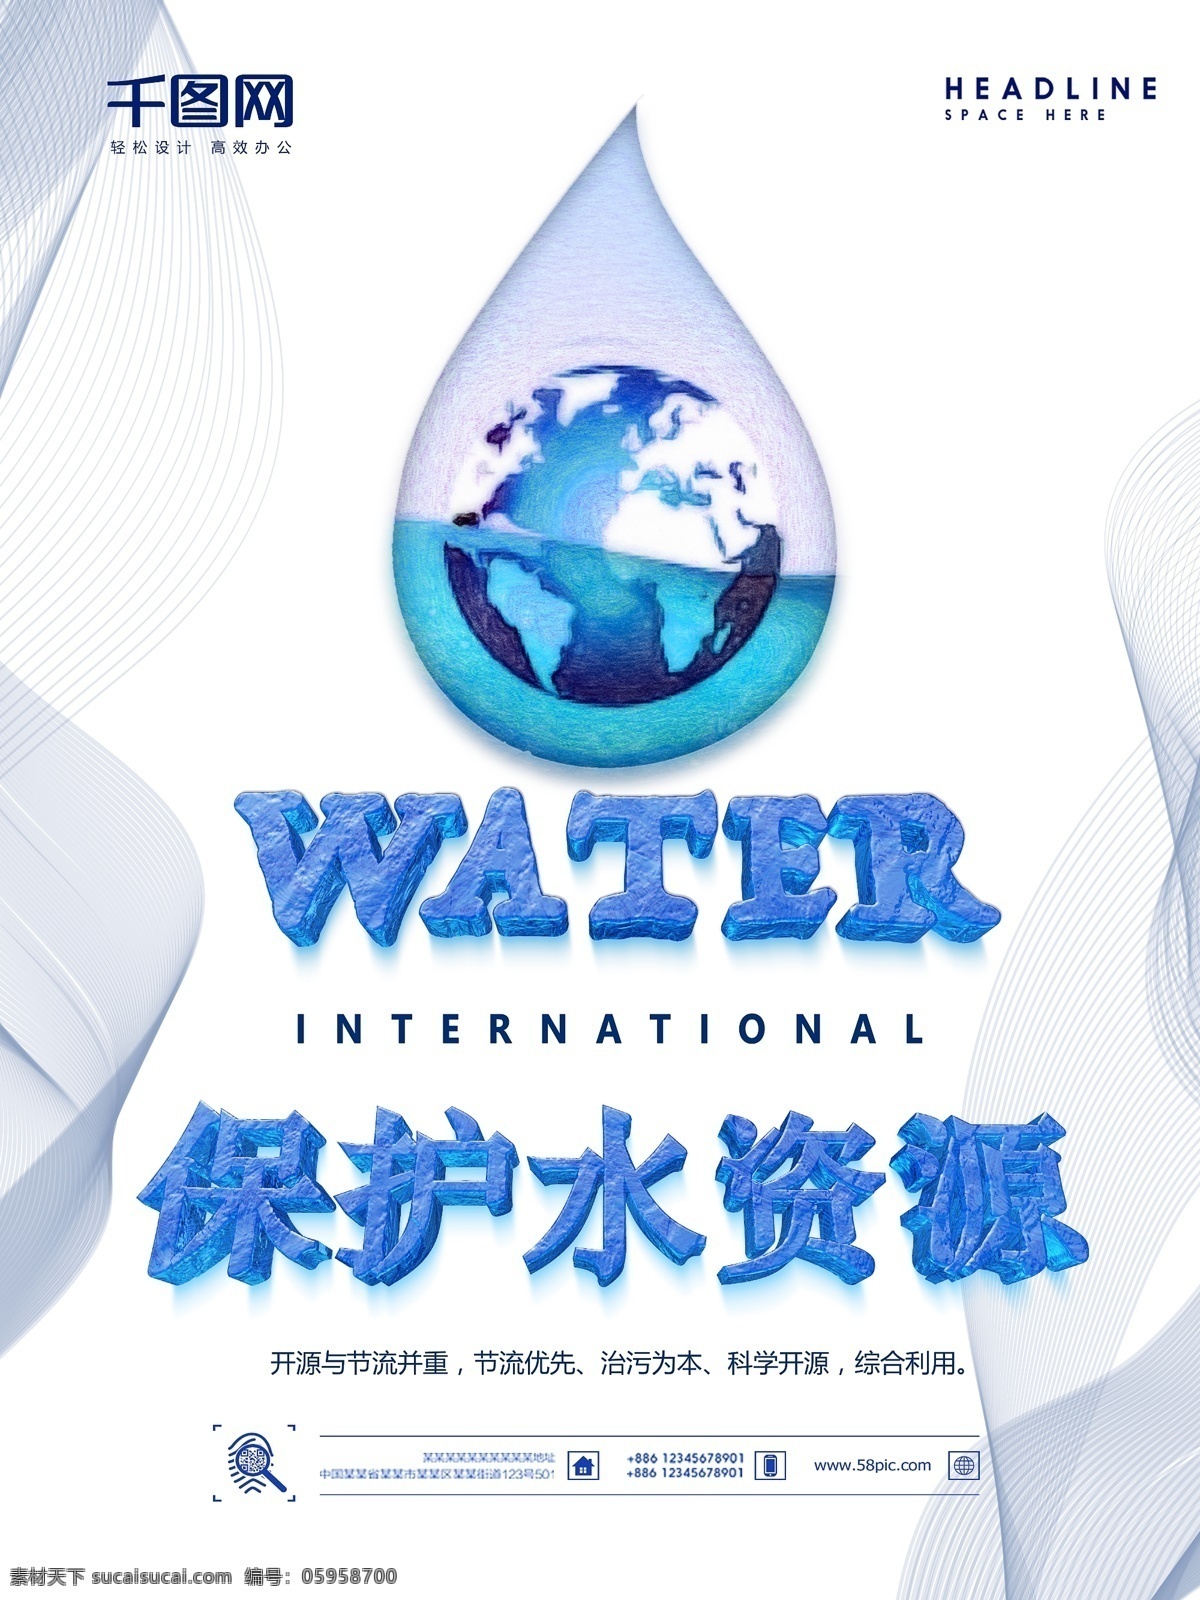 水滴 water 创意 地球 保护 水资源 公益 海报 保护水资源 政府机关 水 饮水 蓝色 森林 海洋 湖泊 河流